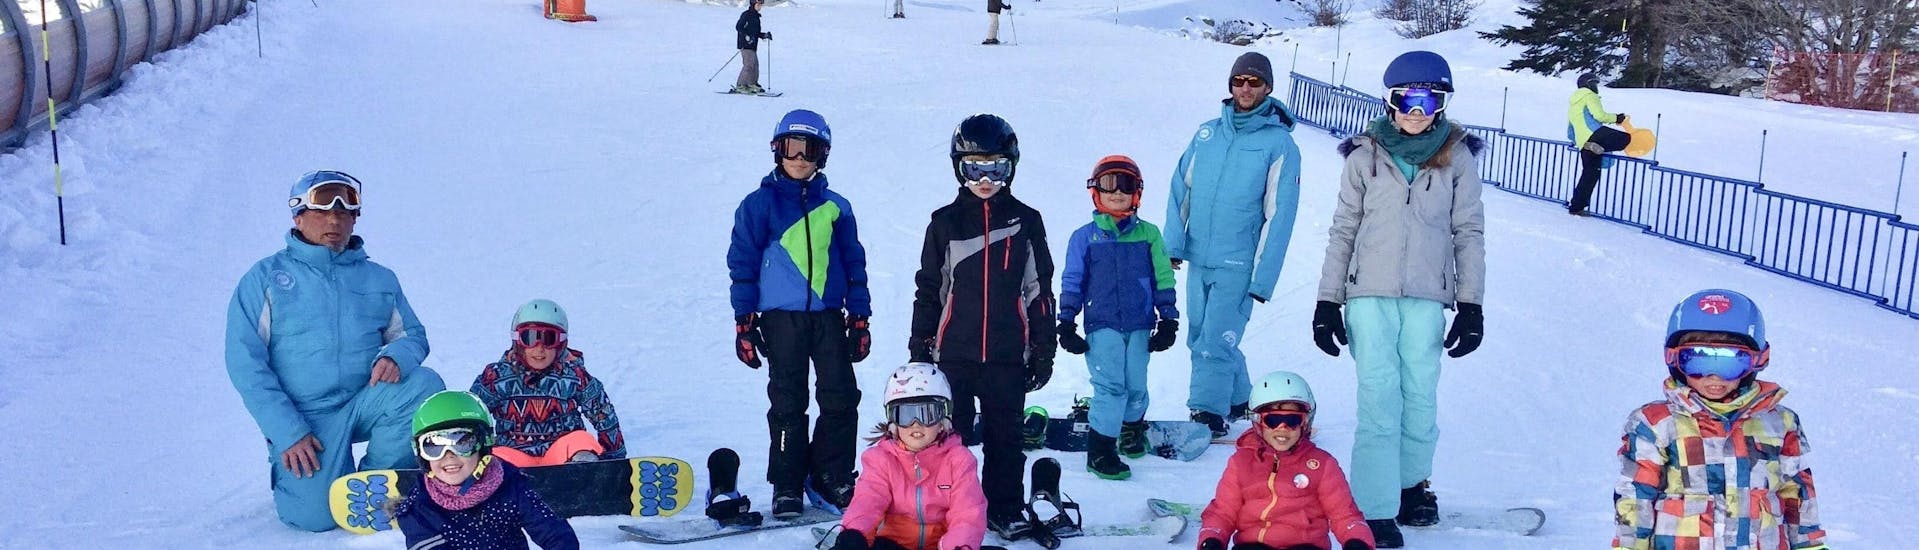 Los snowboarders están sentados en la nieve listos para empezar sus clases de snowboard para niños & adultos - Todos los niveles con la escuela de esquí ESI Ecoloski Barèges.